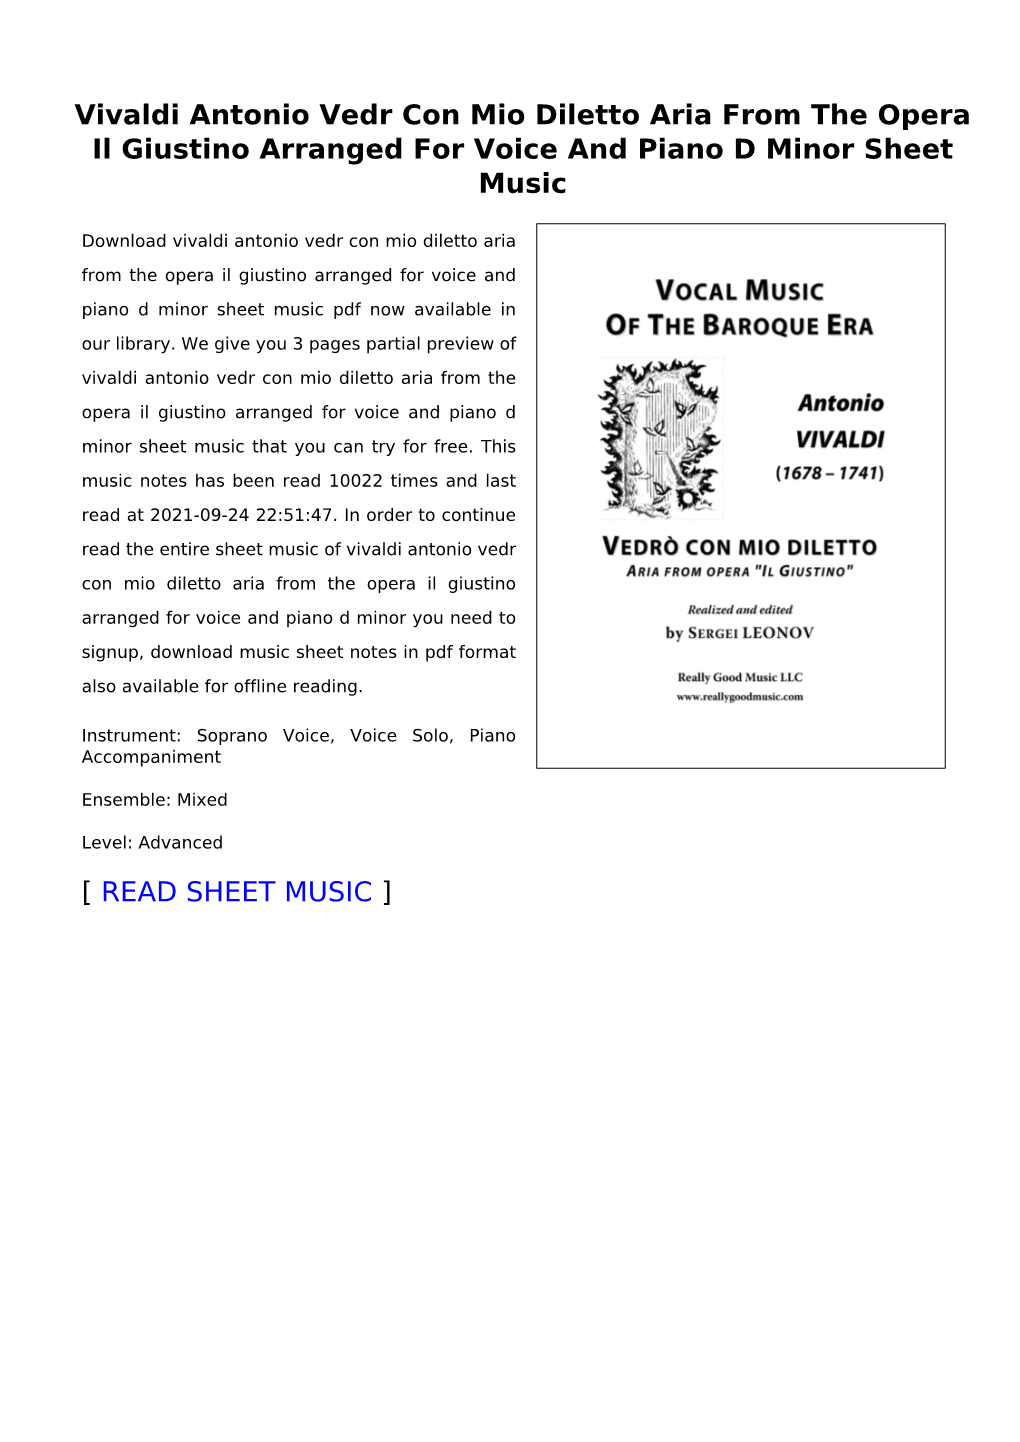 Vivaldi Antonio Vedr Con Mio Diletto Aria from the Opera Il Giustino Arranged for Voice and Piano D Minor Sheet Music